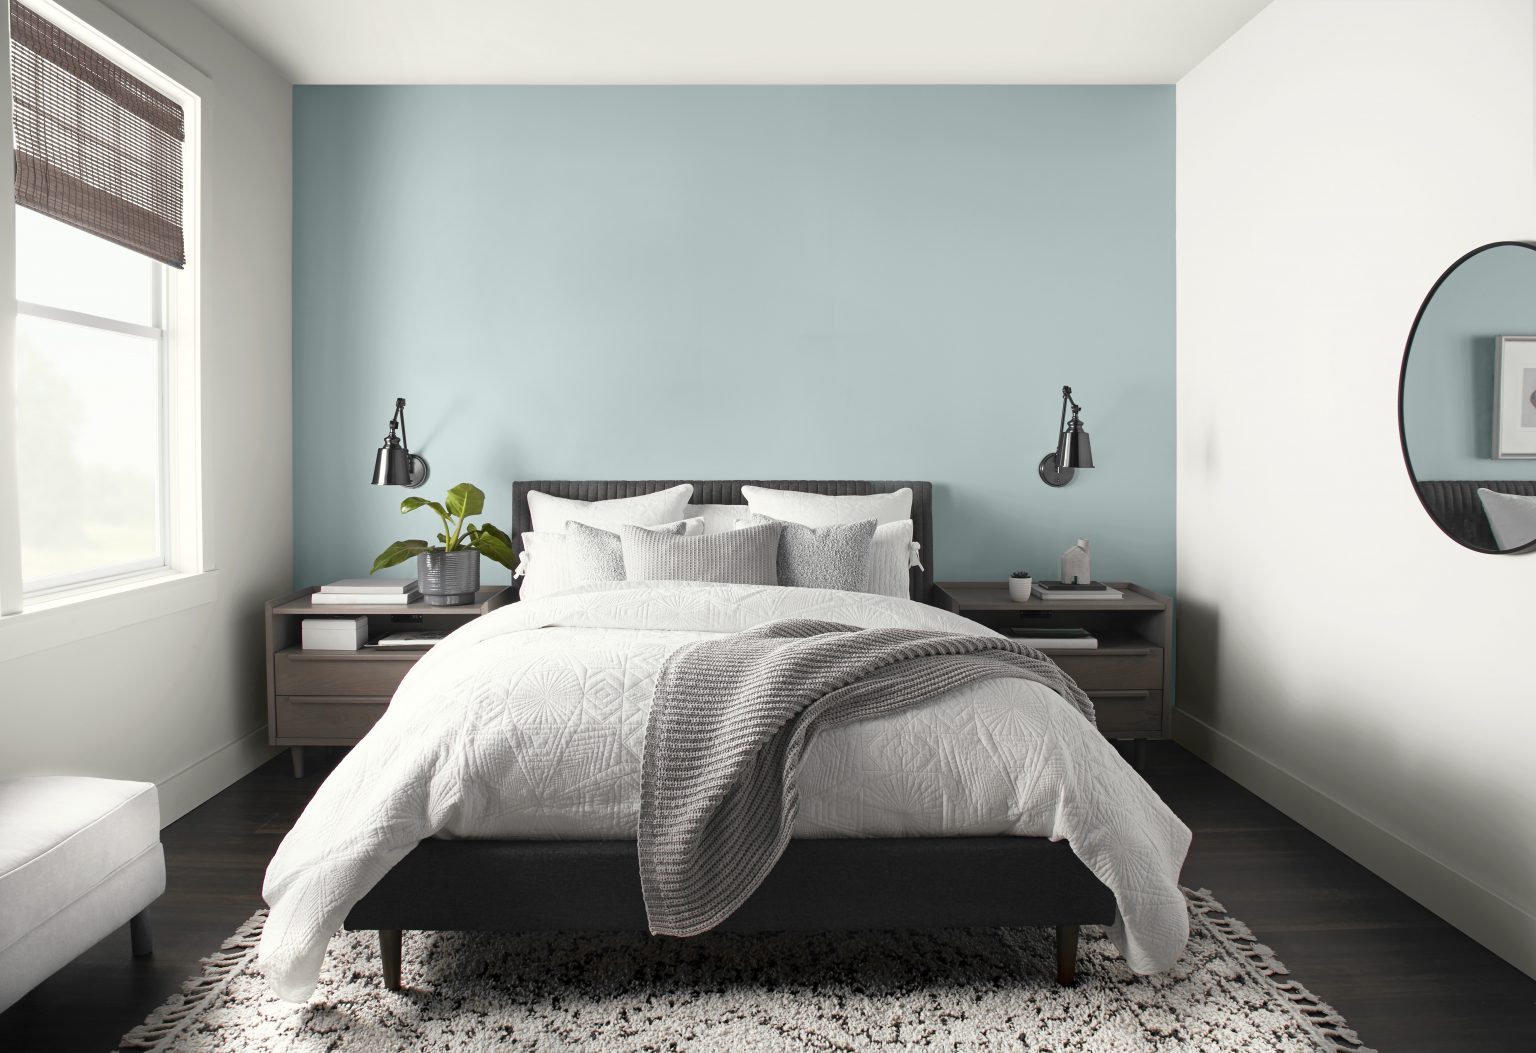 Une chambre d'un blanc éclatant avec le mur de la tête de lit en bleu pâle